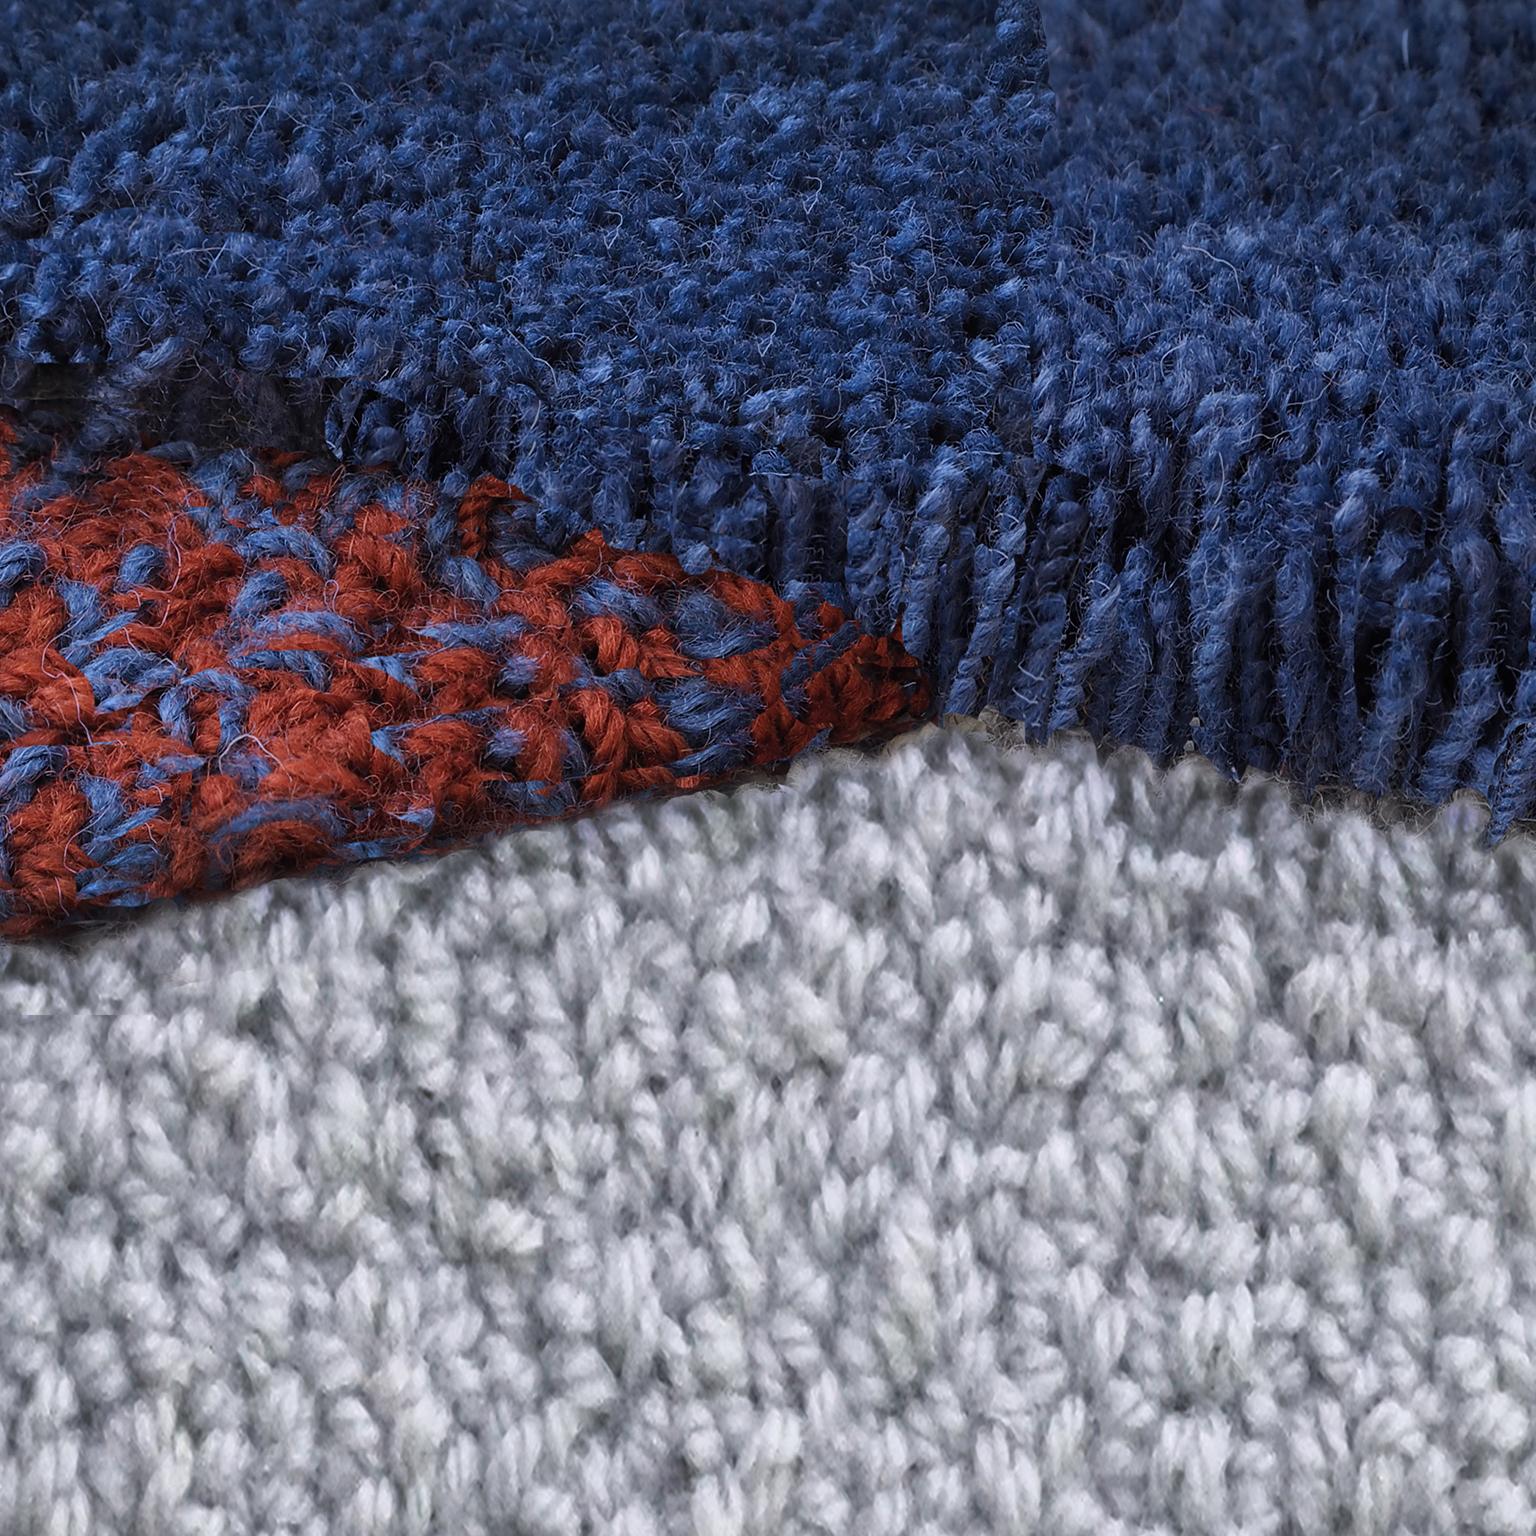 tapis 100% laine de Nouvelle-Zélande
Conçu par Seraina Lareida 
Fabriqué en Italie

Oci Right est l'une des formes de tapis de la ligne facilement adaptable à tout type d'espace.
En marchant dessus, vous pouvez sentir les différentes longueurs